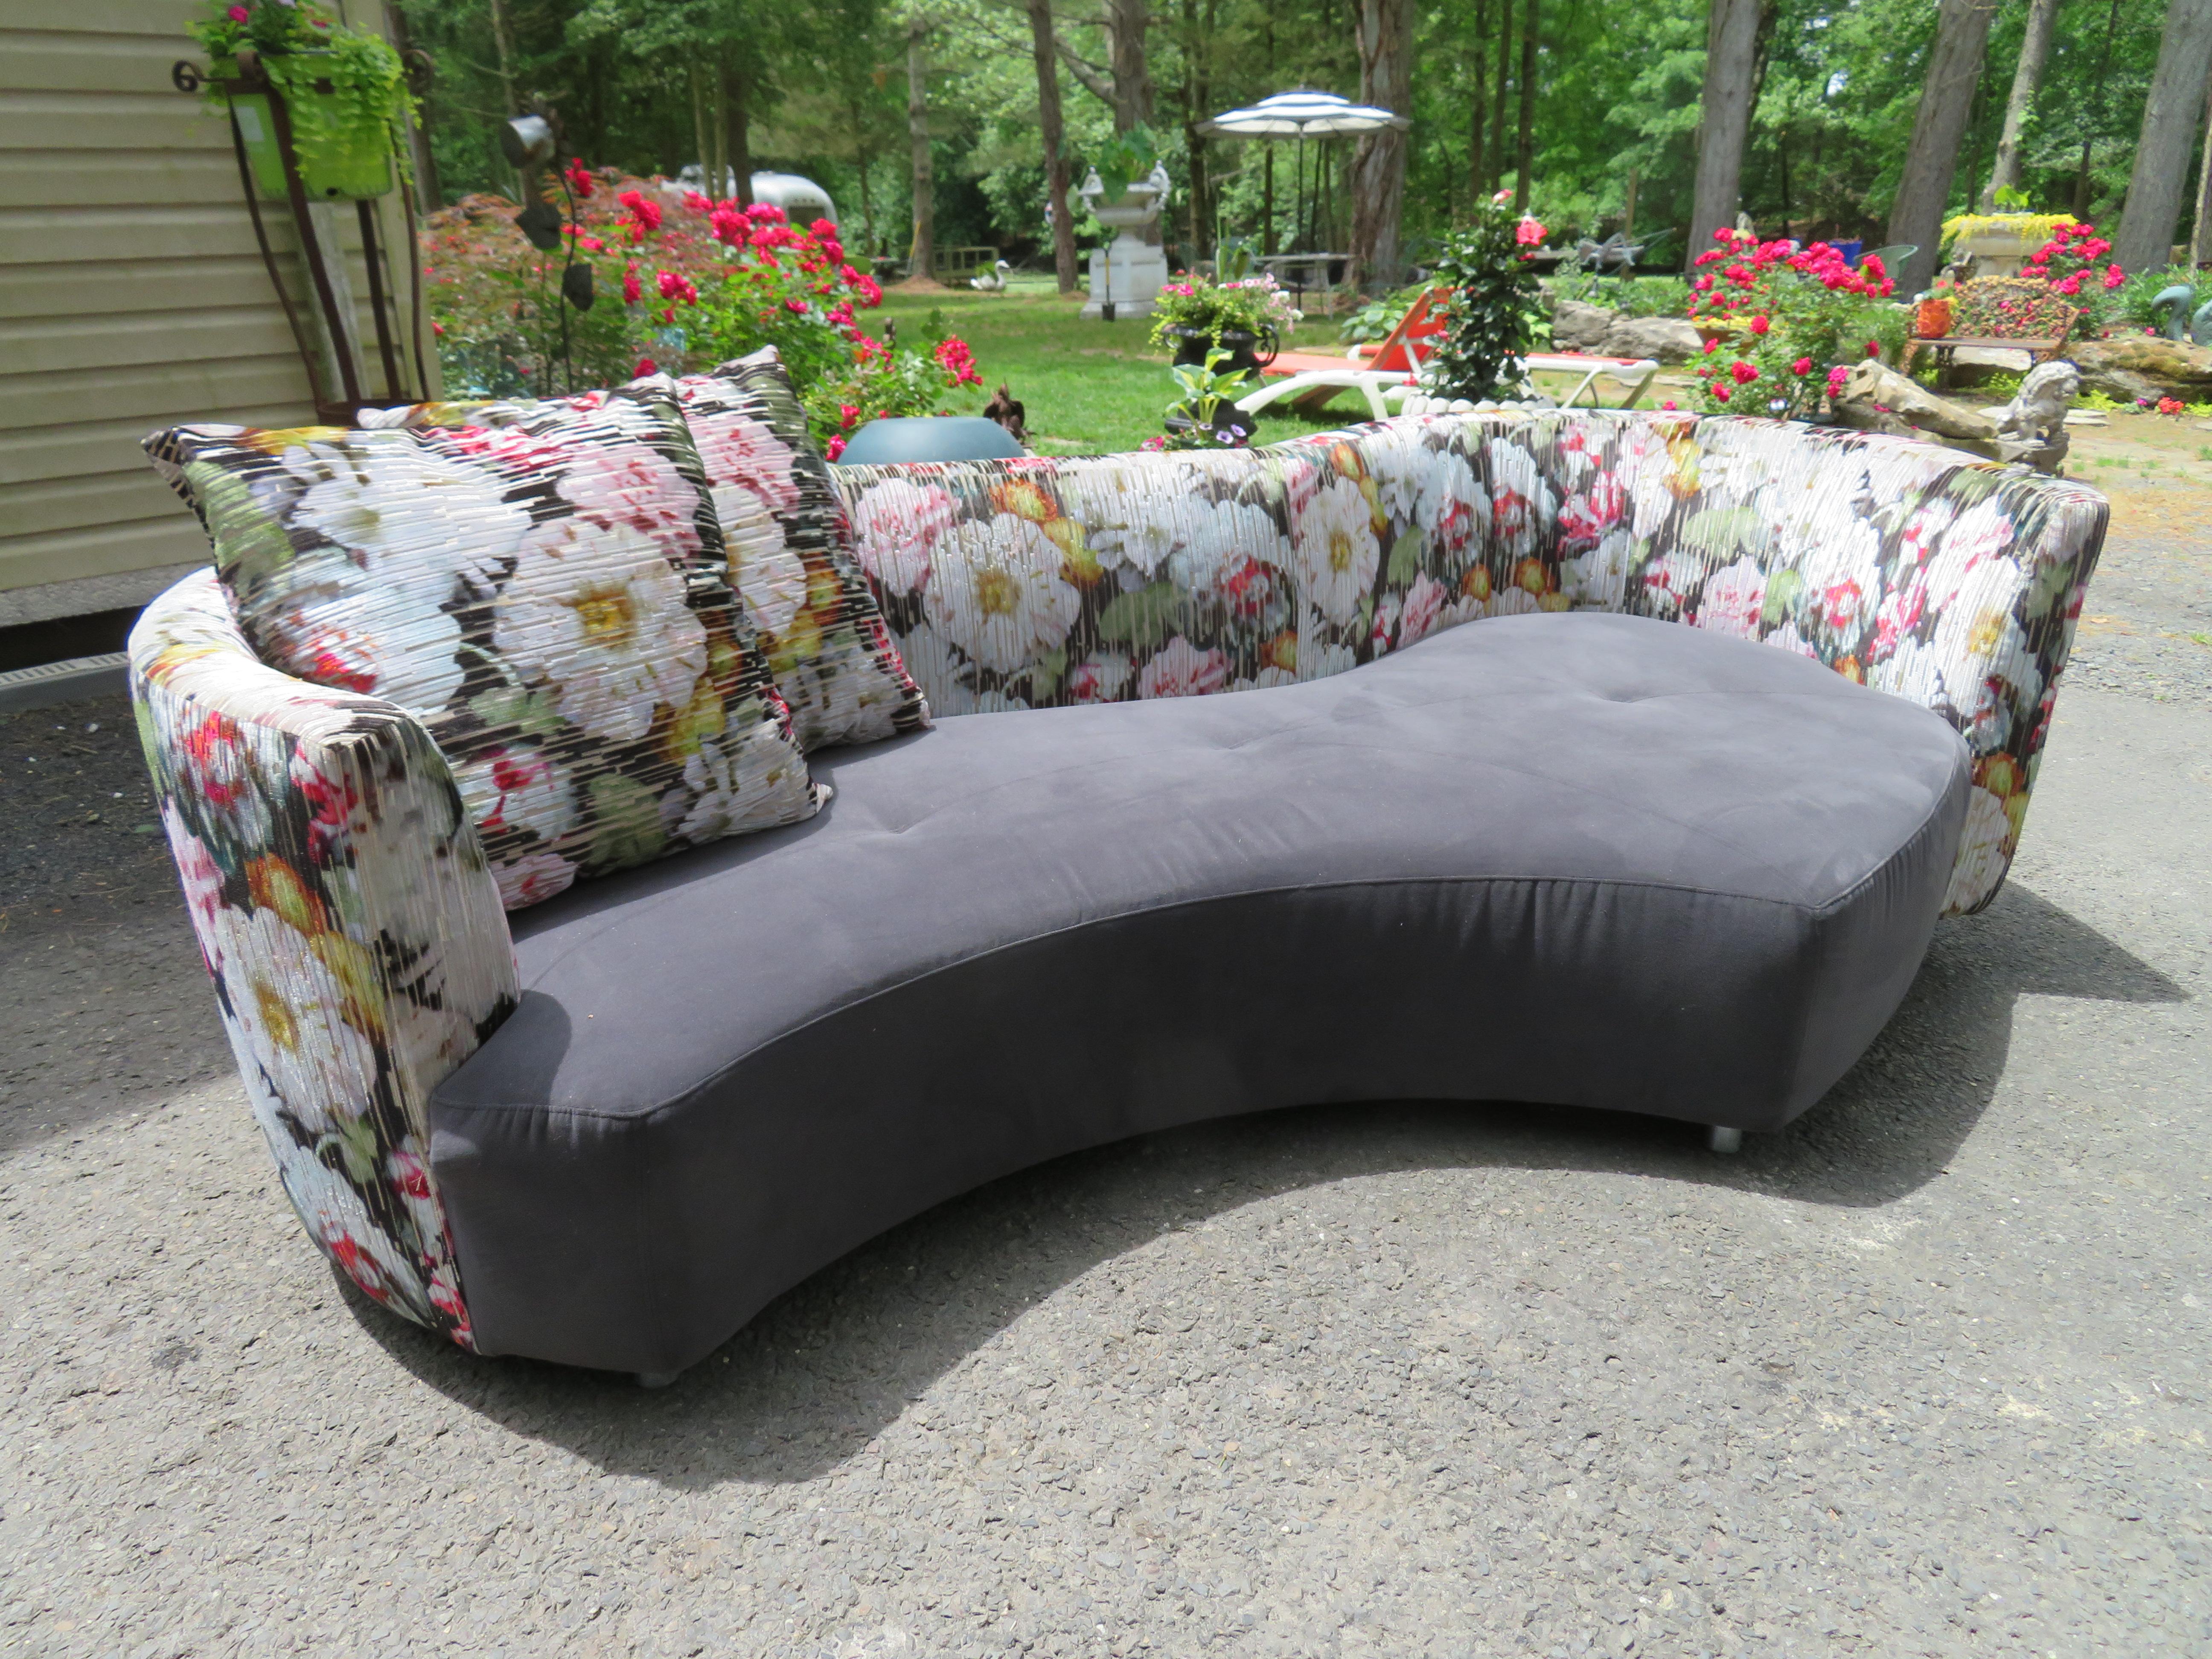 Hervorragendes Paar von Roche Bobois Tangram nierenförmiges Sofa. Die Sofas wurden nach Maß mit Black Edition-Herbaria-Jacquard-Samt und grauem Ultra-Suede gepolstert und sehen umwerfend aus. Es sind 2 florale Rückenkissen und 4